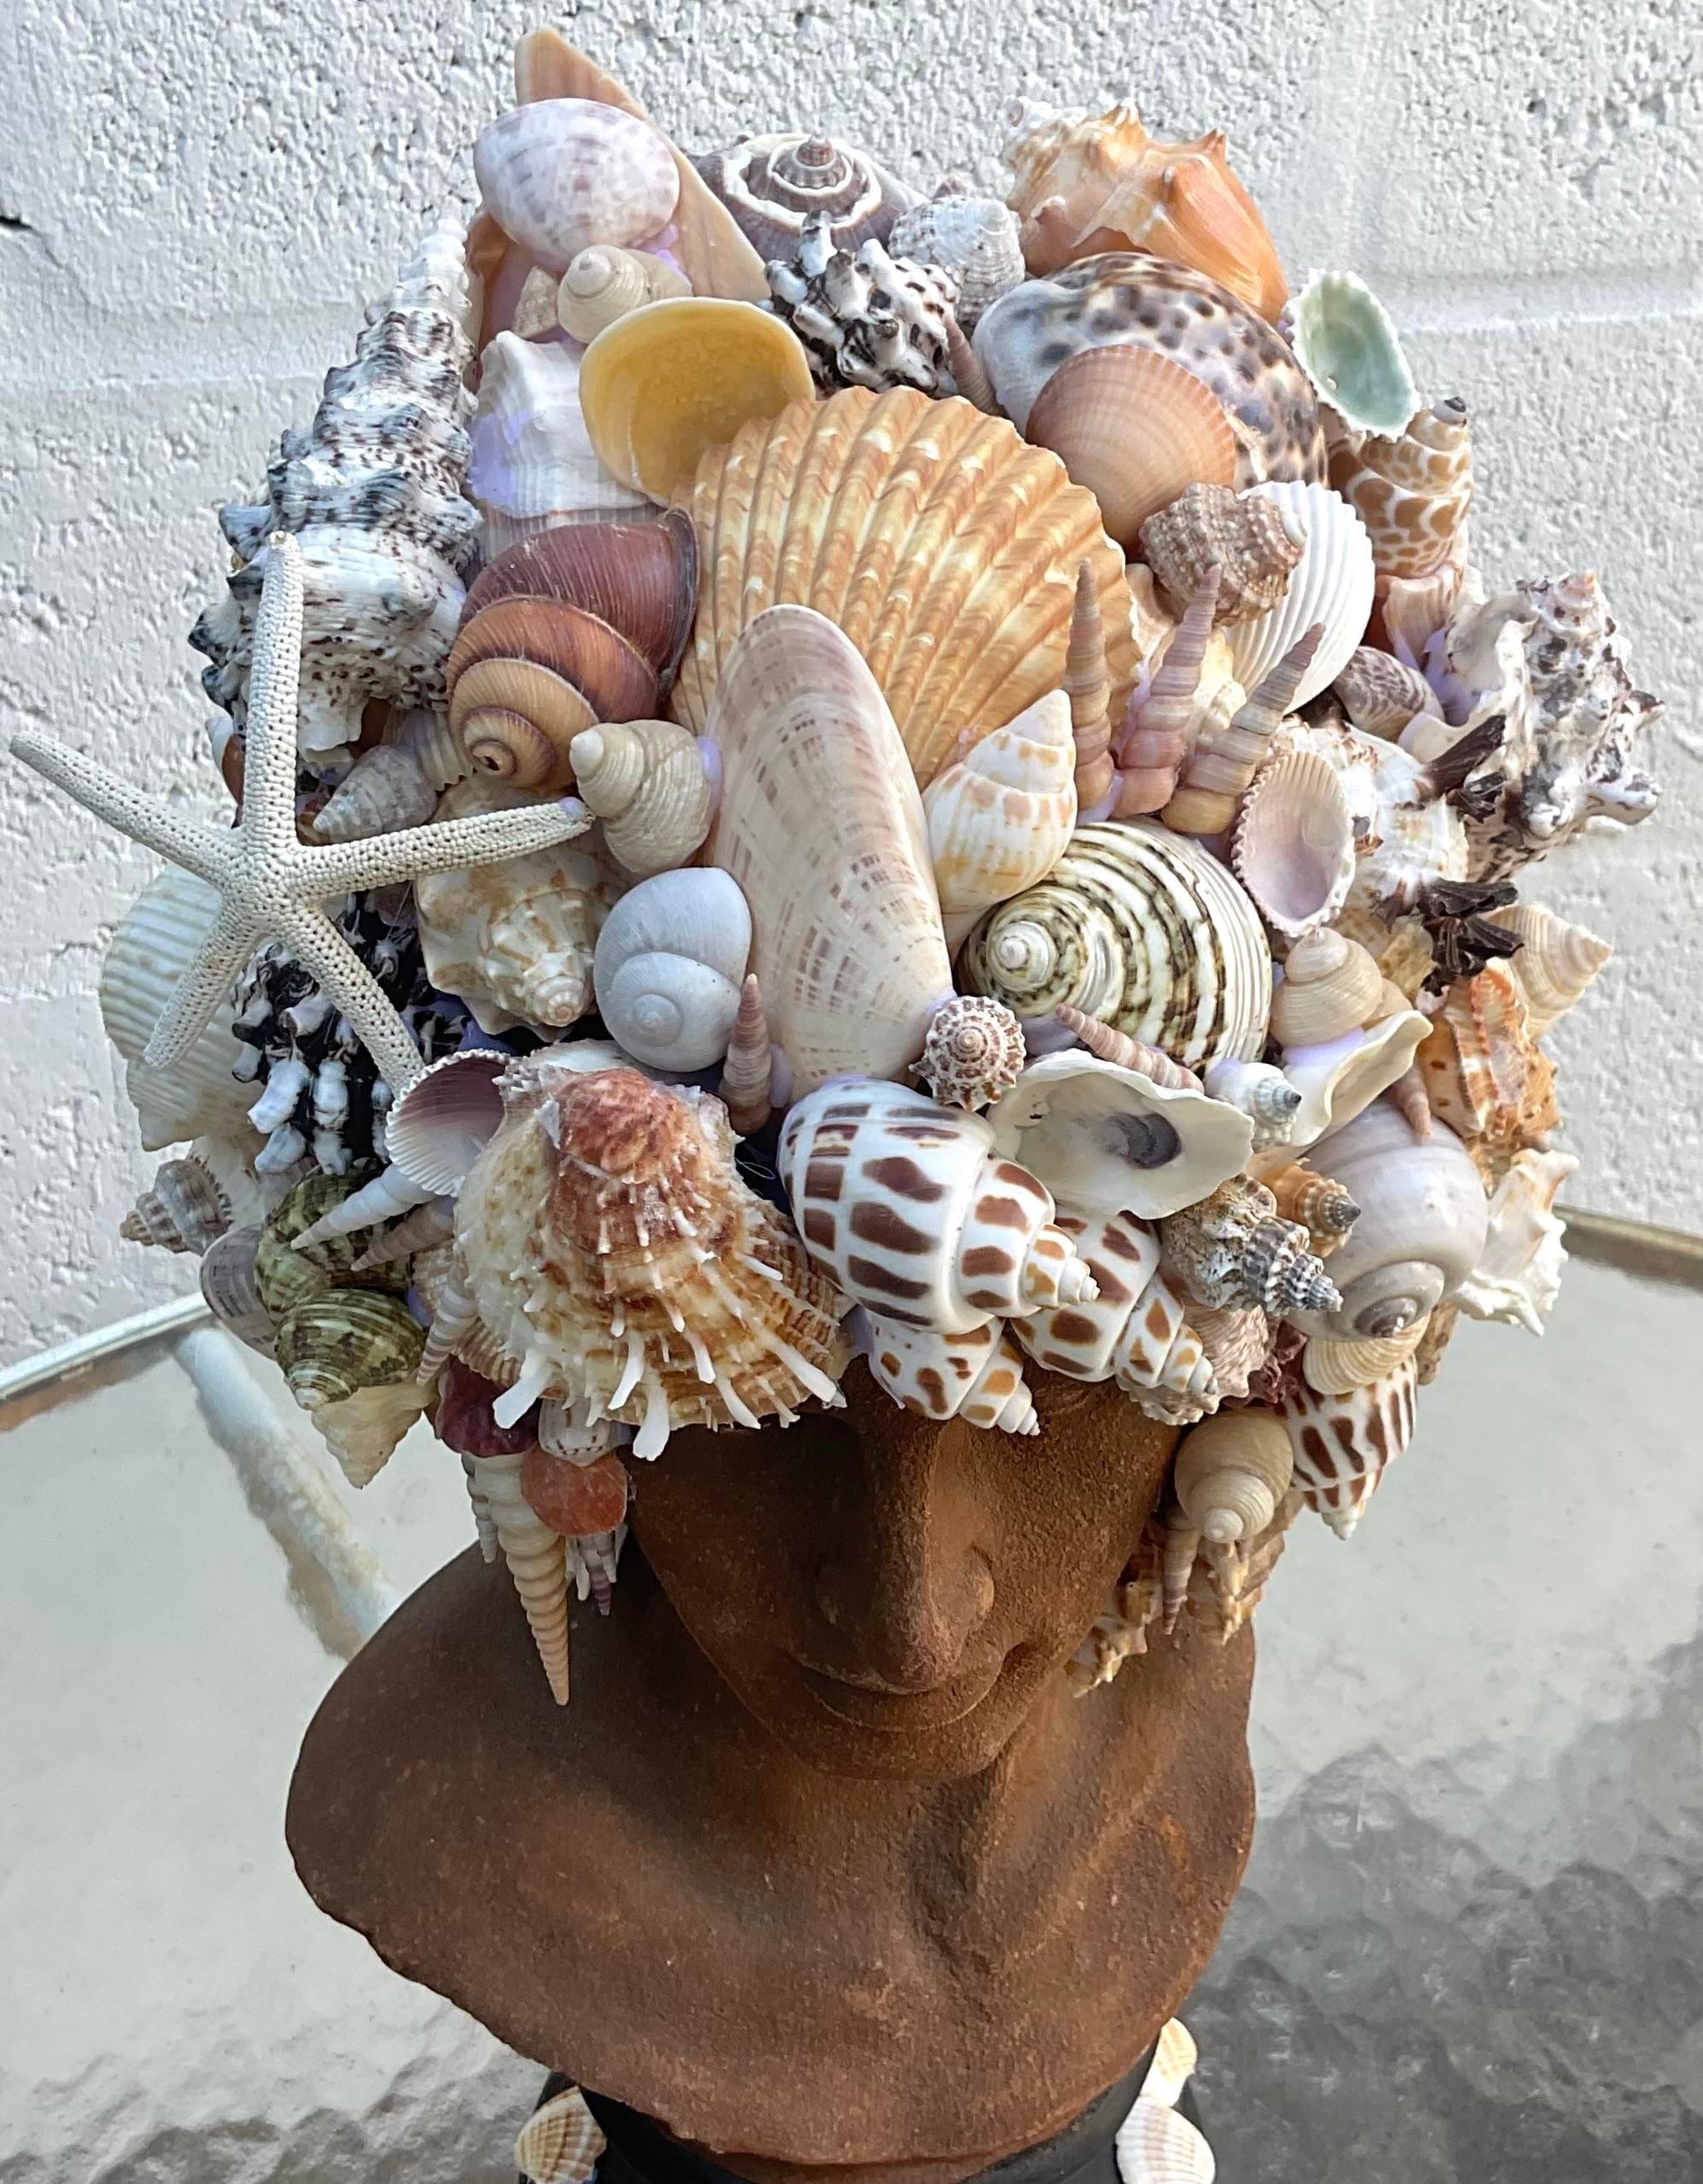 Un fabuleux buste d'homme vintage de la côte. Une figurine chic en résine incrustée d'une belle sélection de coquillages. Fabriqué à la main par un artisan local de Palm Beach. Acquis d'une propriété de Palm Beach.